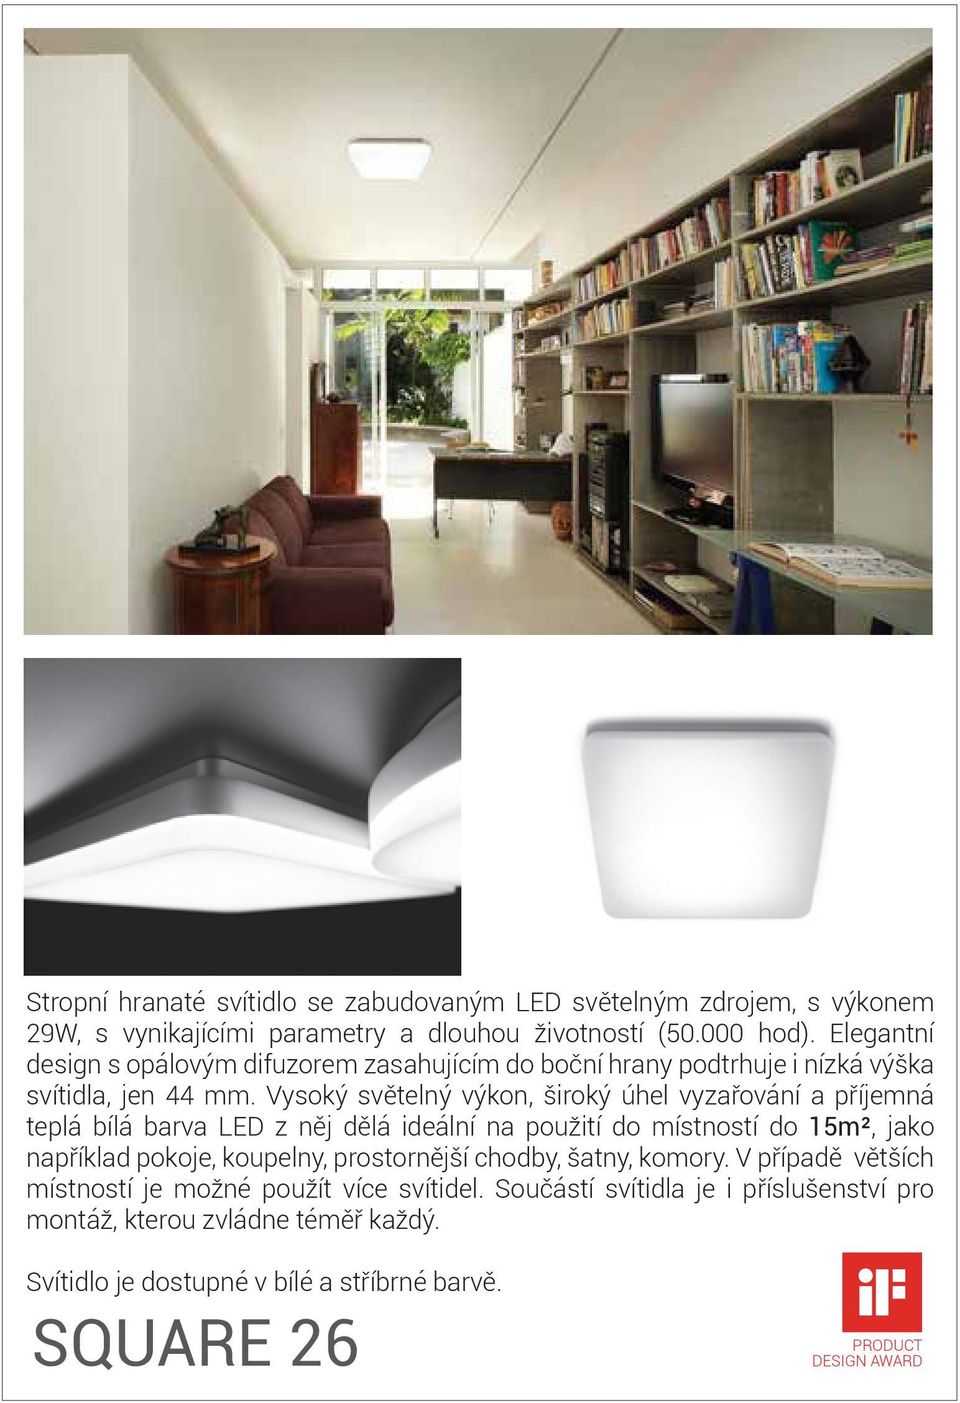 Vysoký světelný výkon, široký úhel vyzařování a příjemná teplá bílá barva LED z něj dělá ideální na použití do místností do 15m², jako například pokoje, koupelny,